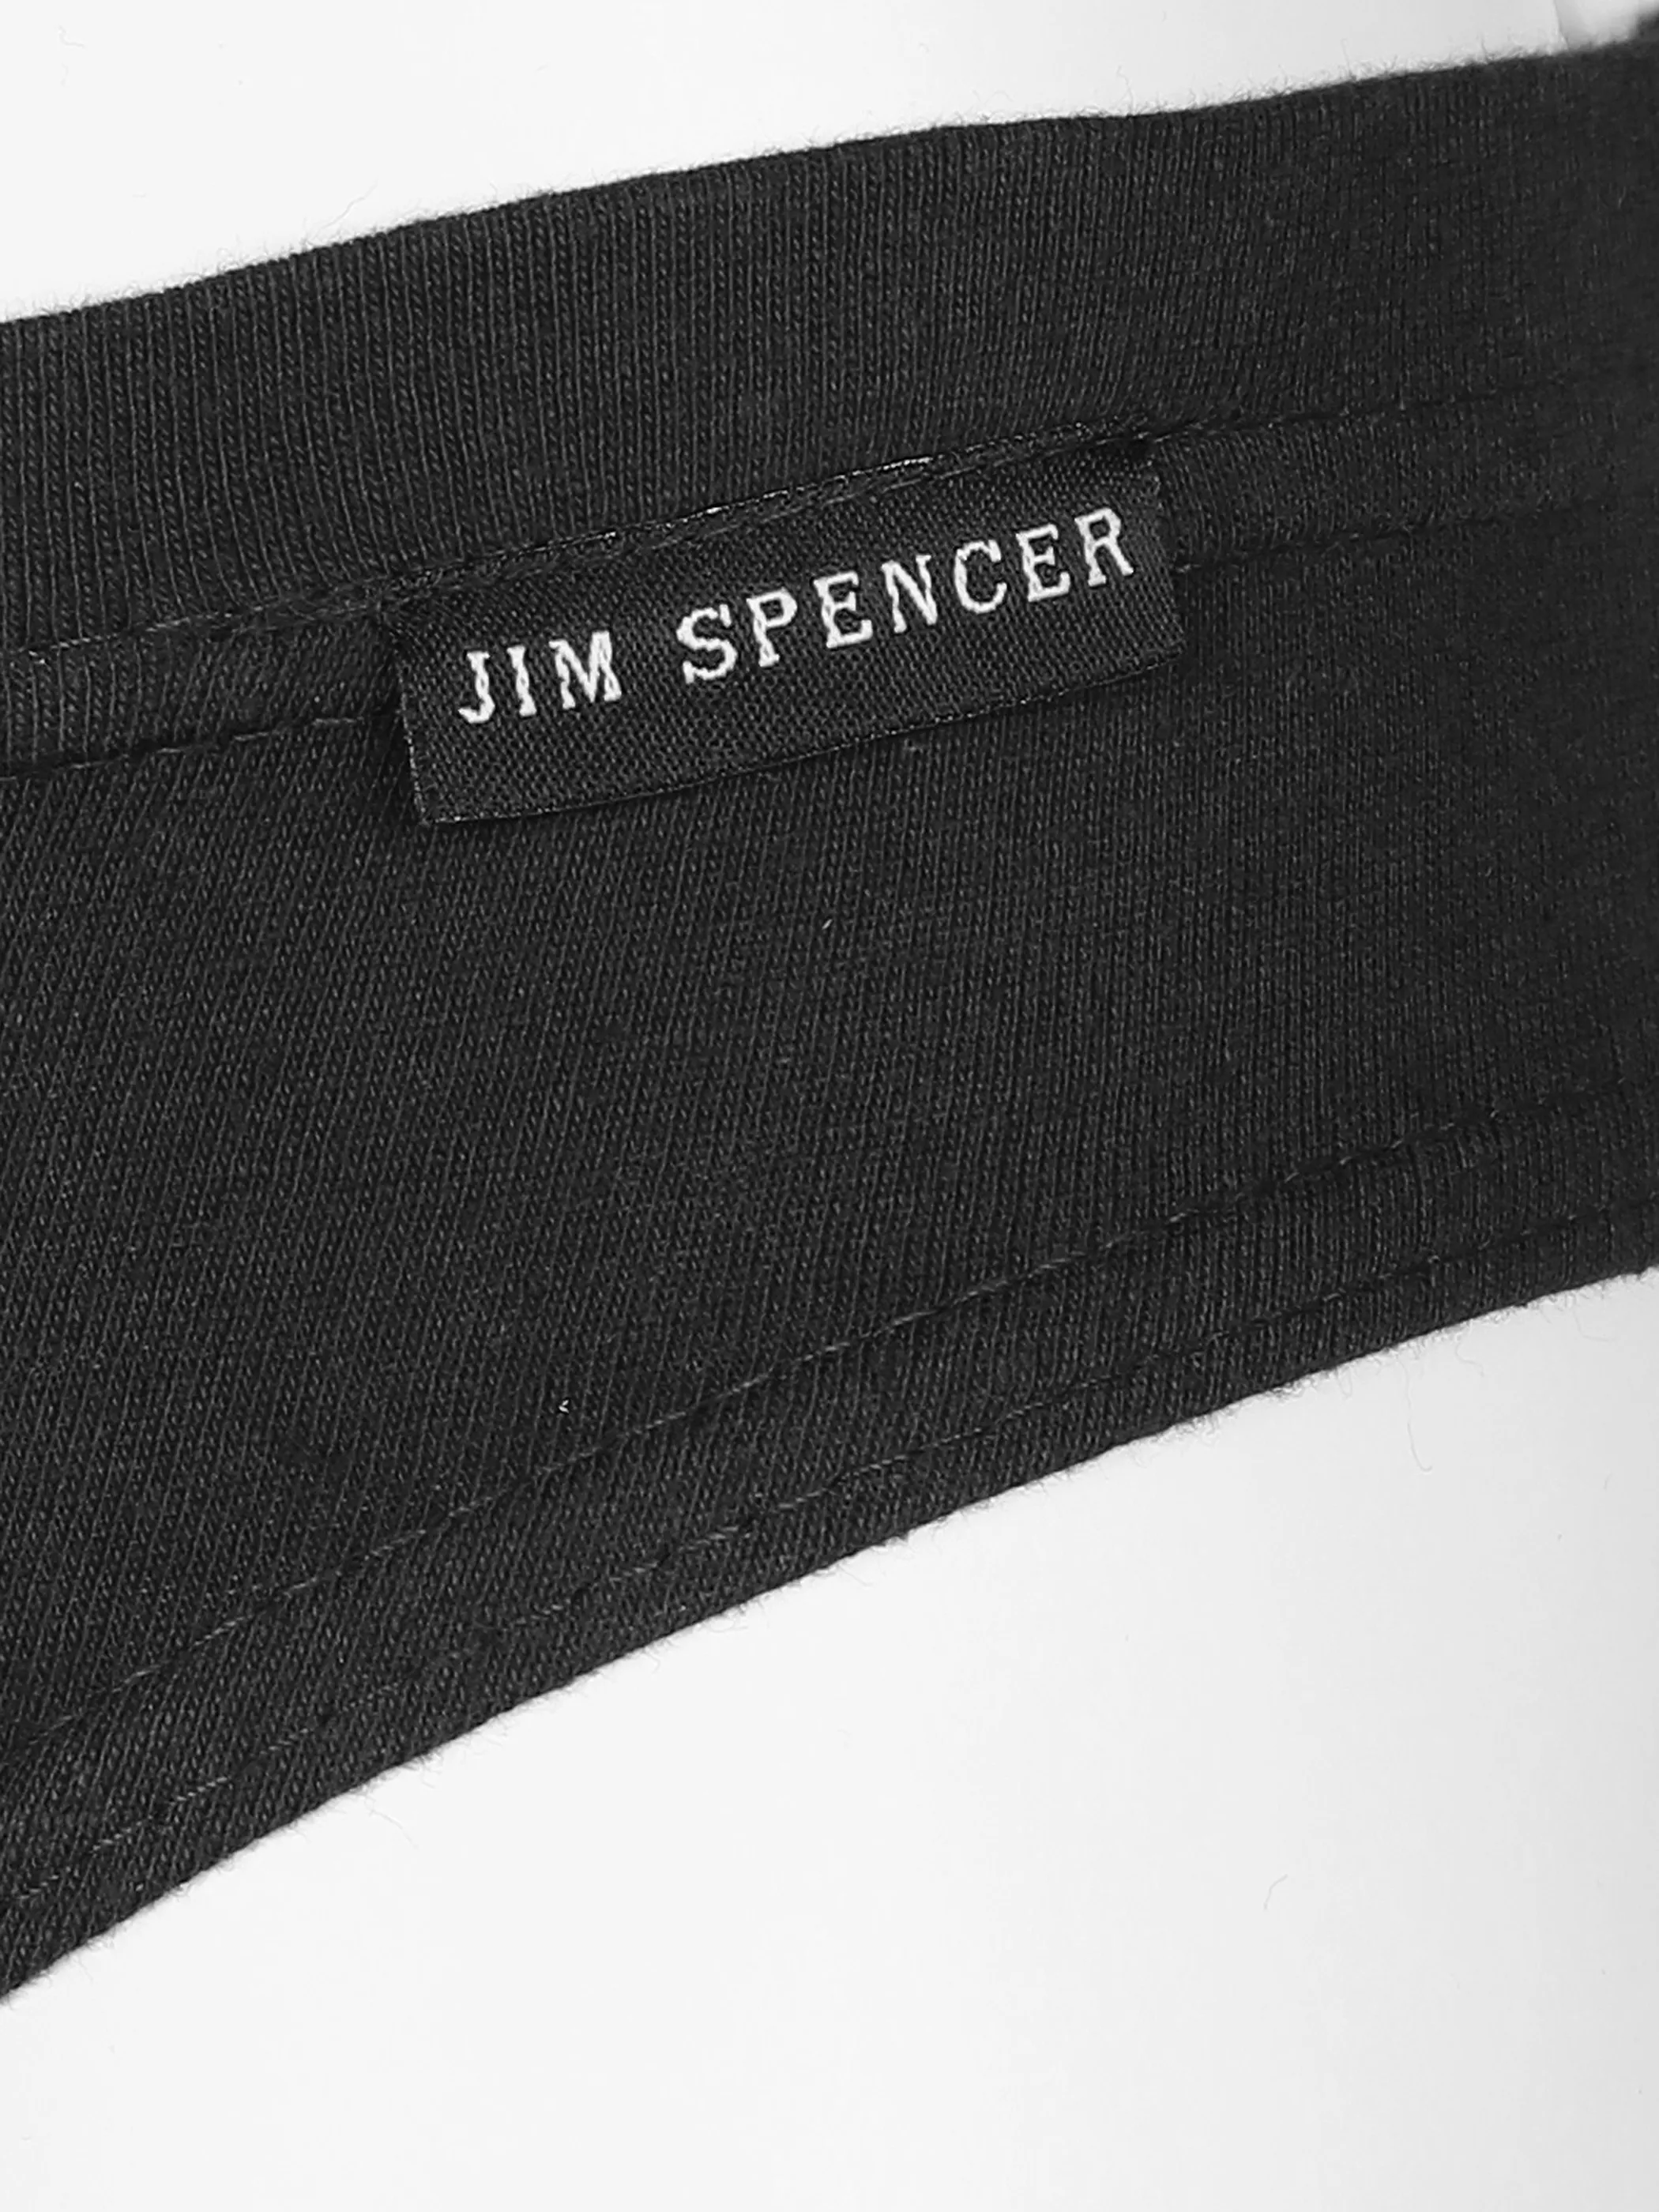 Jim Spencer He-Slip 5er Pack Schwarz 591100 SCHWARZ 3